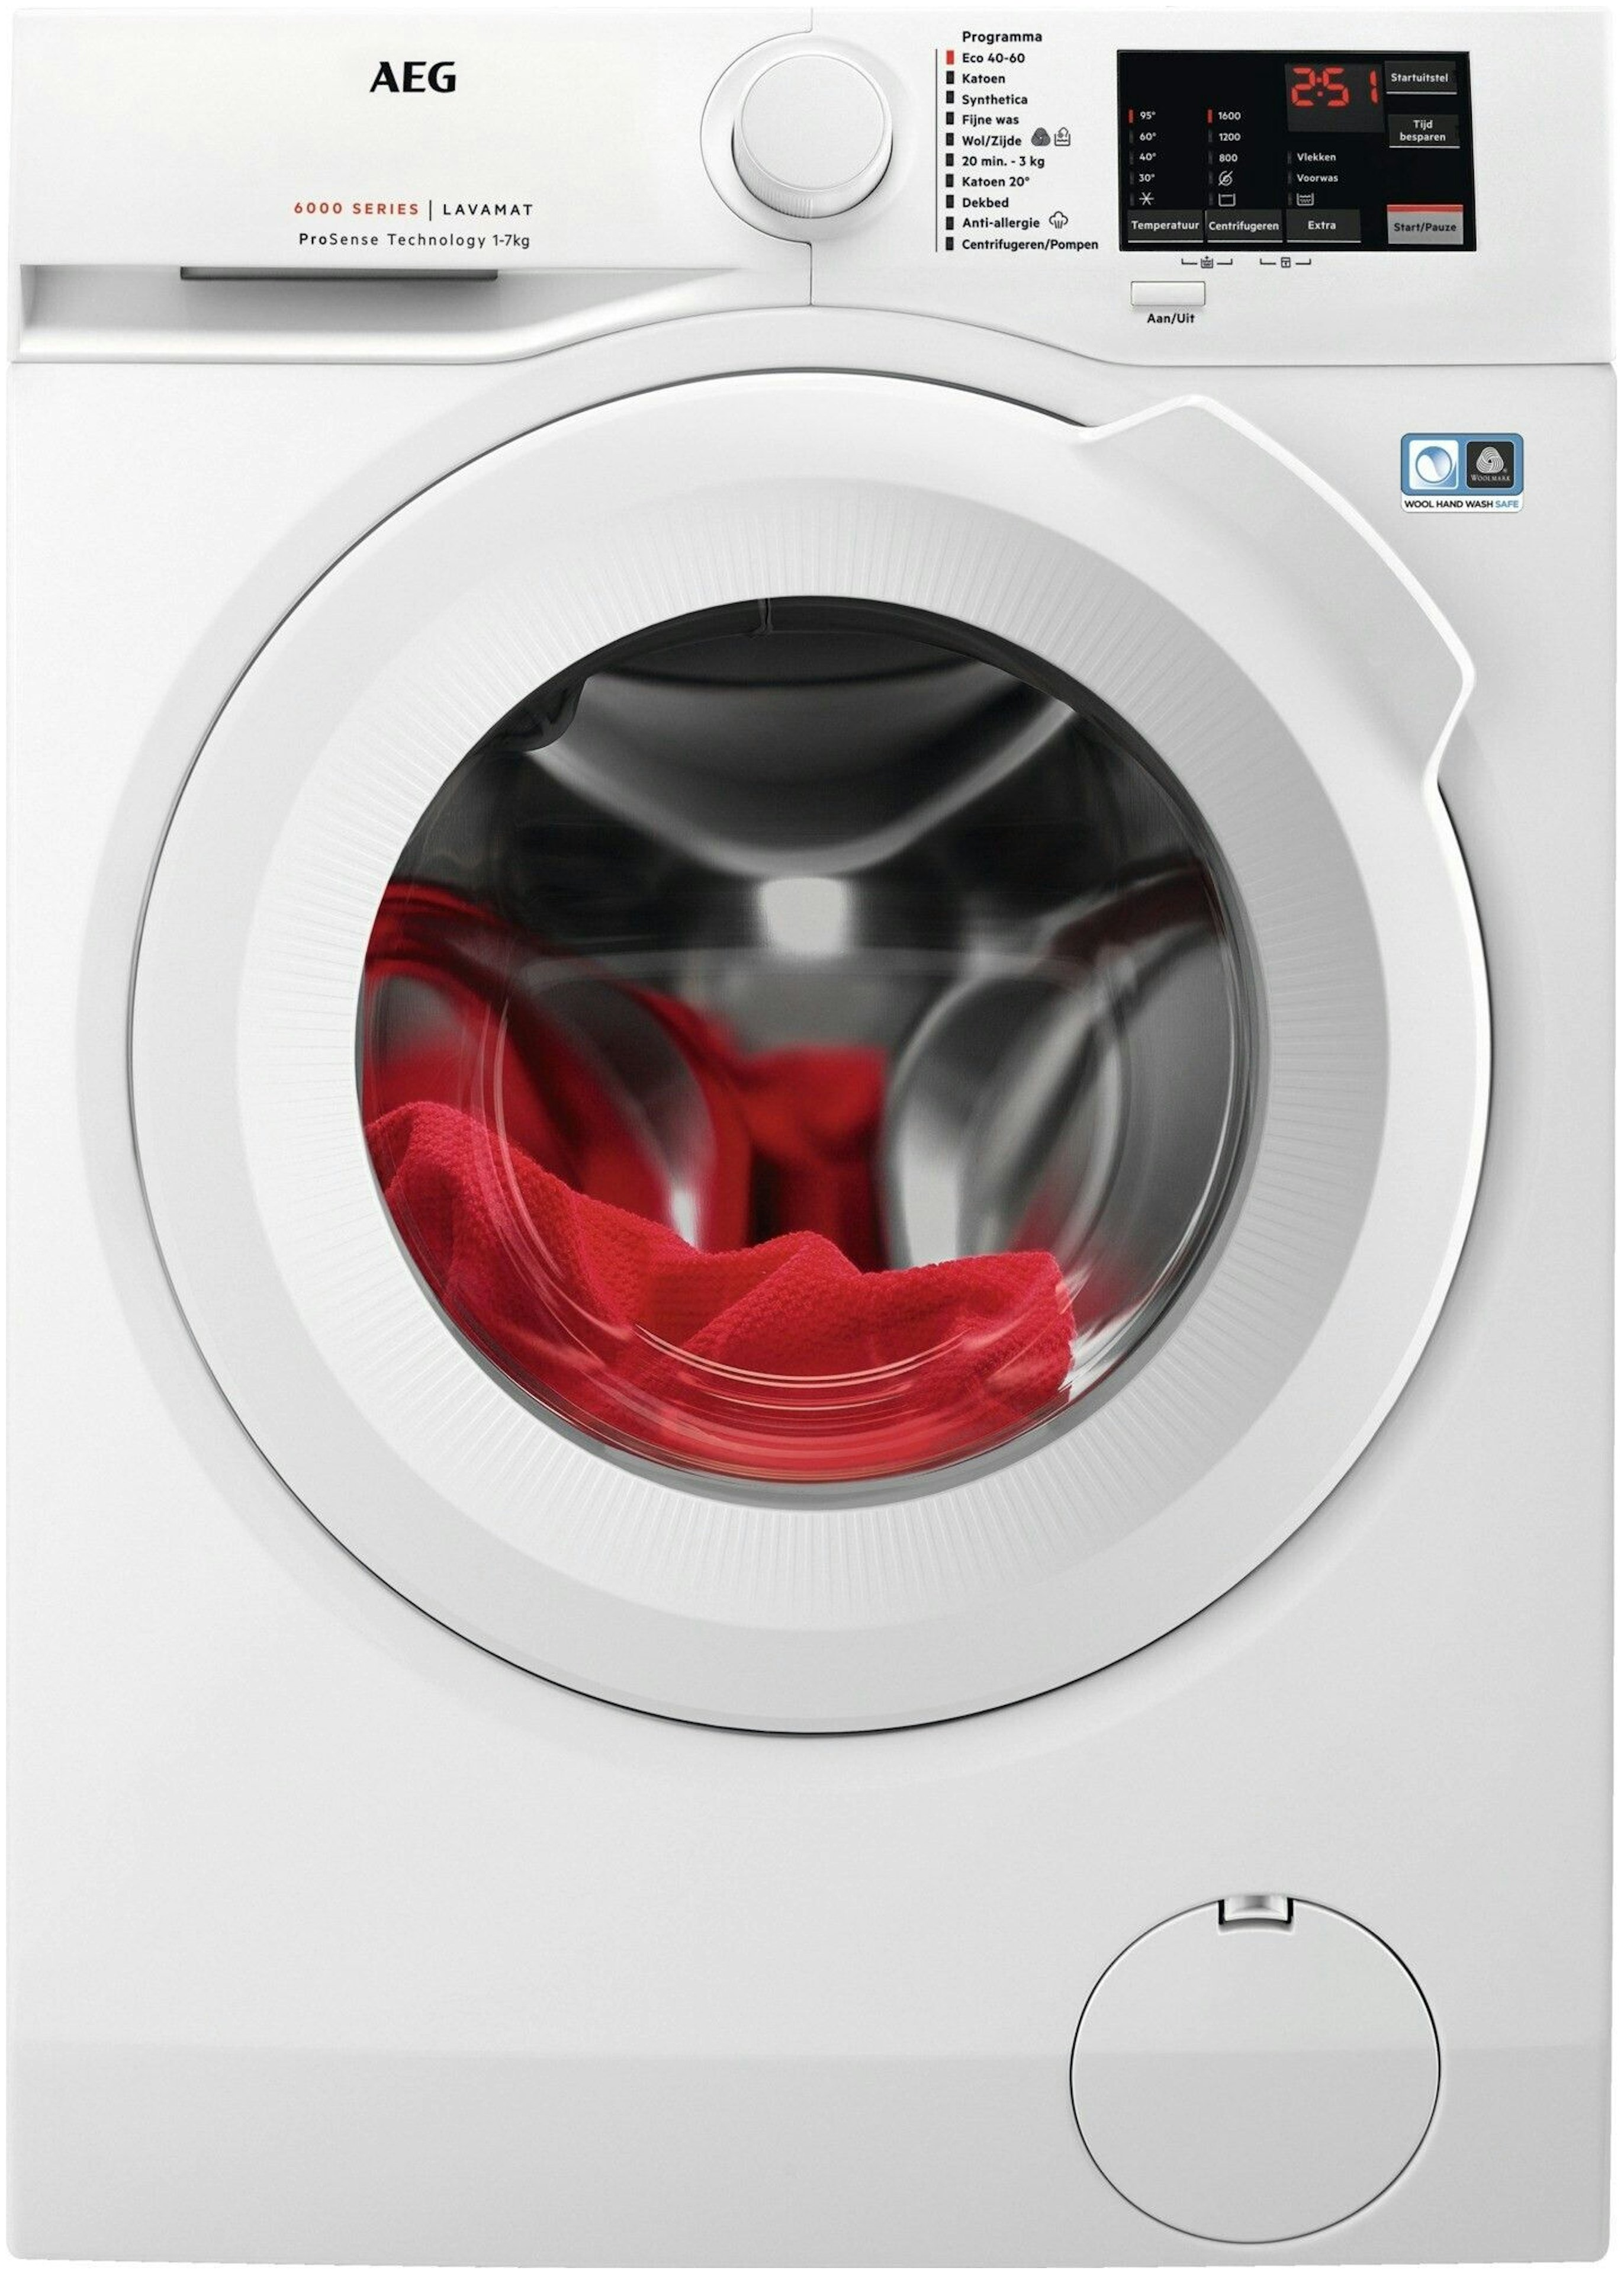 moe vertraging onder AEG wasmachines - Bemmel & Kroon